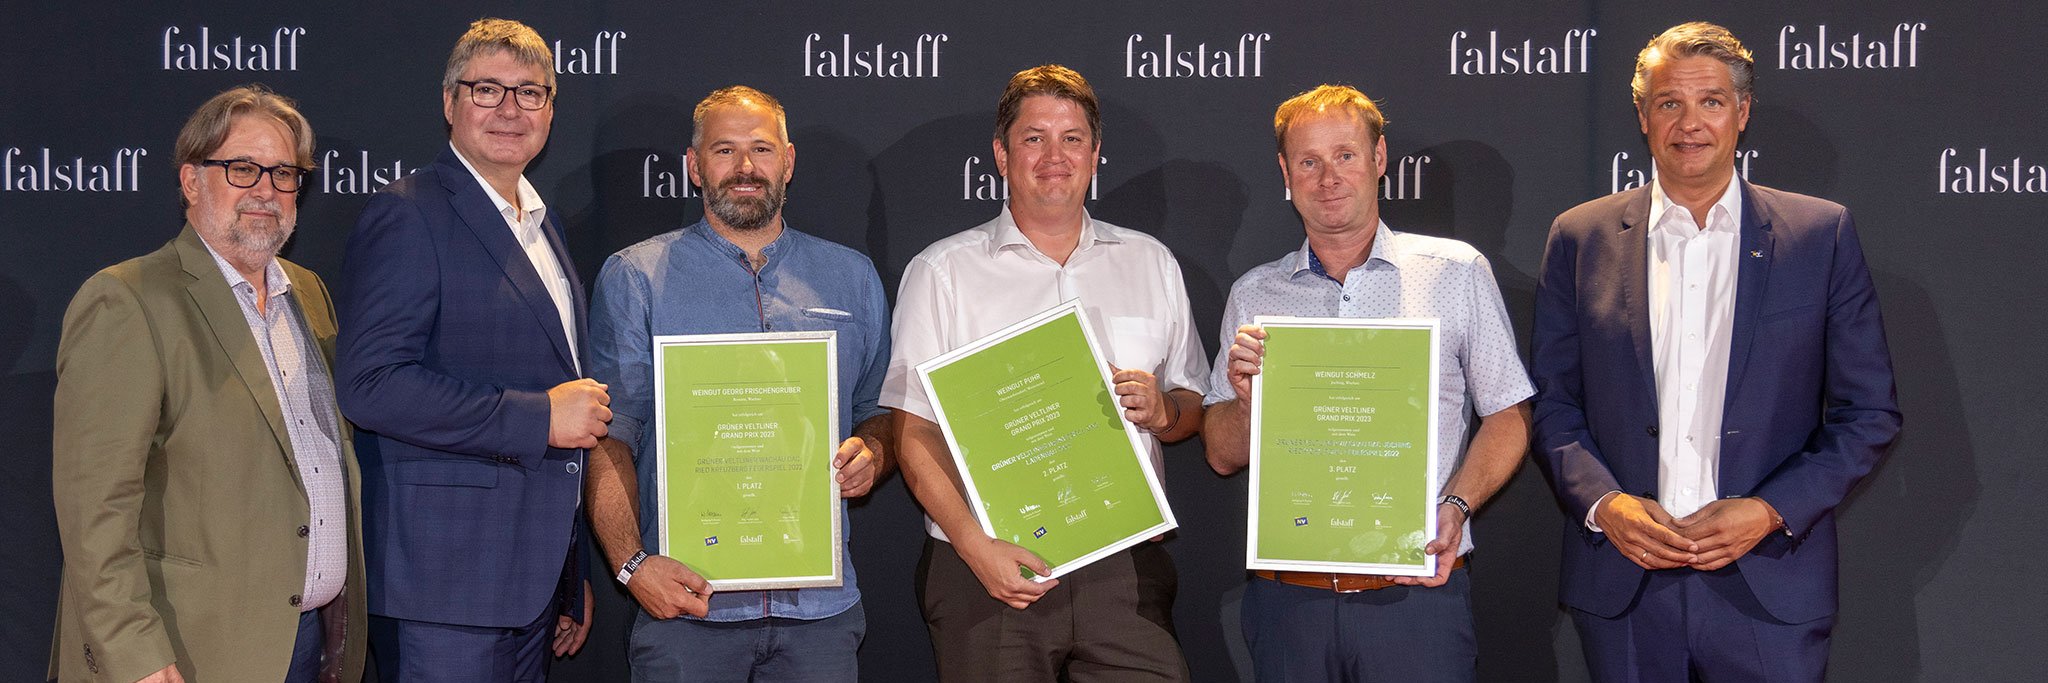 Falstaff Wein Chefredakteur Peter Moser (links), NÖ Weinbaupräsident Reinhard Zöchmann und Stefan Jauk, NÖ Versicherung, gratulierten den Siegern des »Grüner Veltliner Grandprix«.